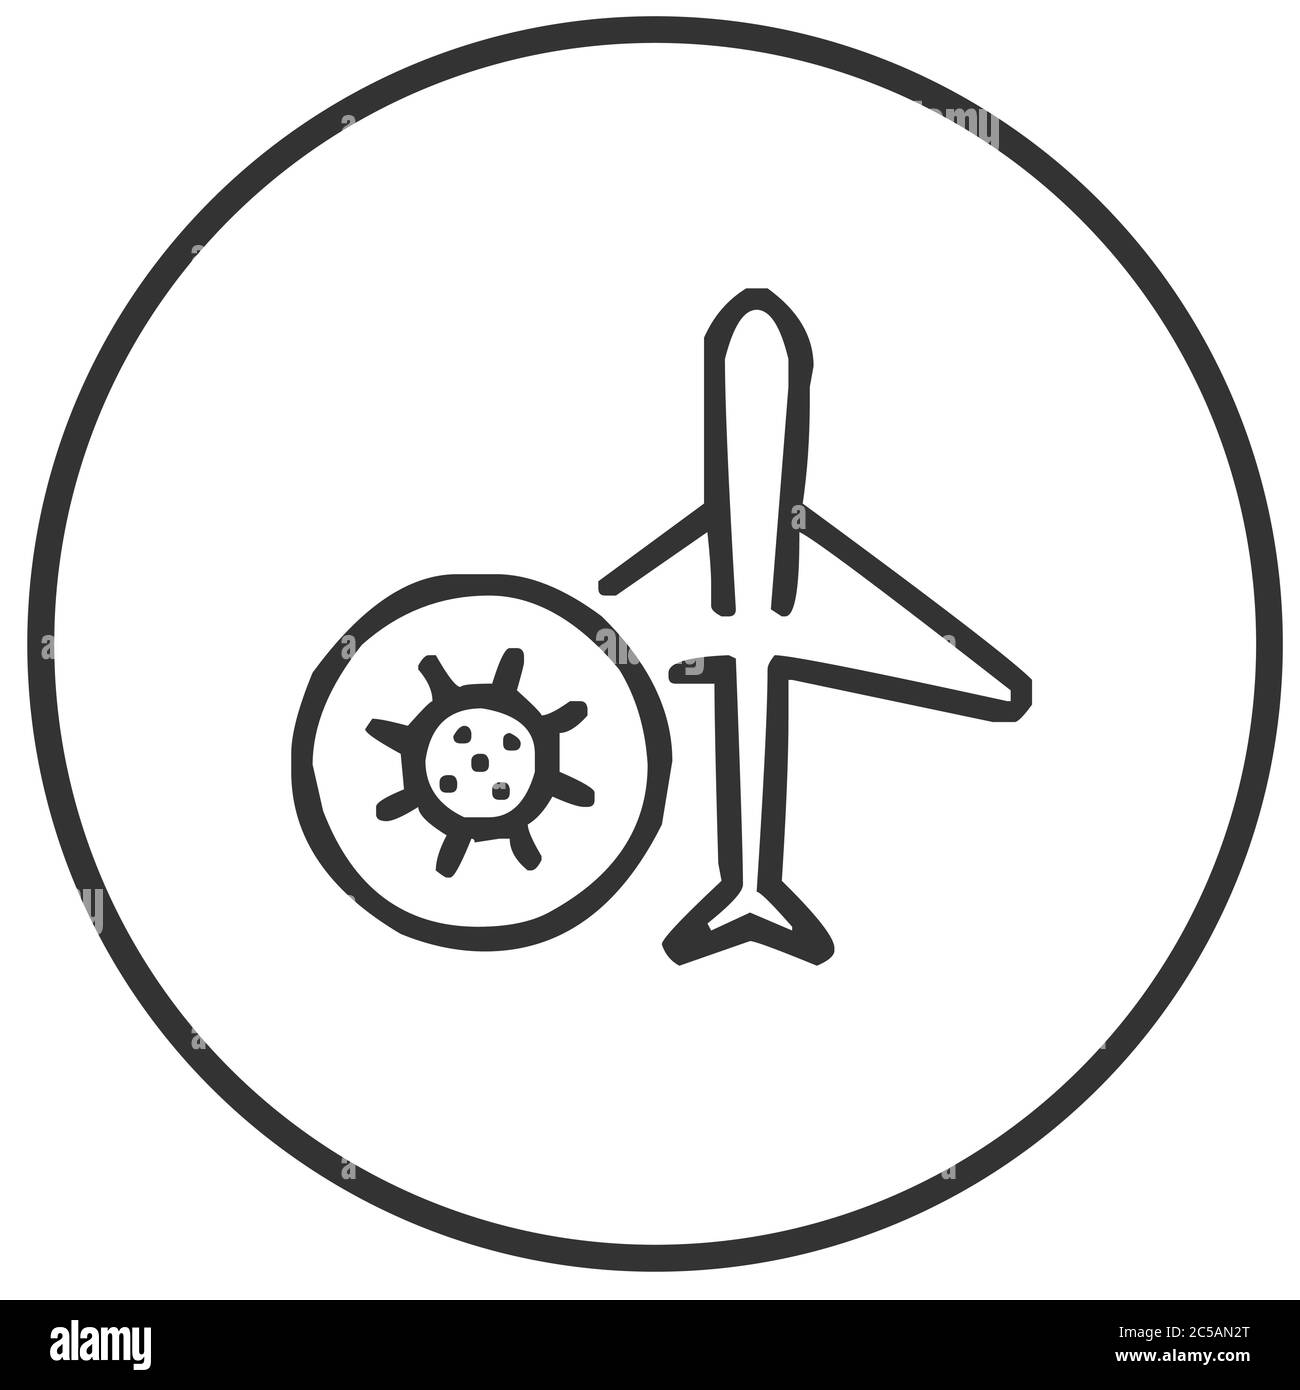 Avion infecté par le coronavirus ou risque élevé d'infection à l'intérieur de l'avion illustration du vecteur d'icône Illustration de Vecteur